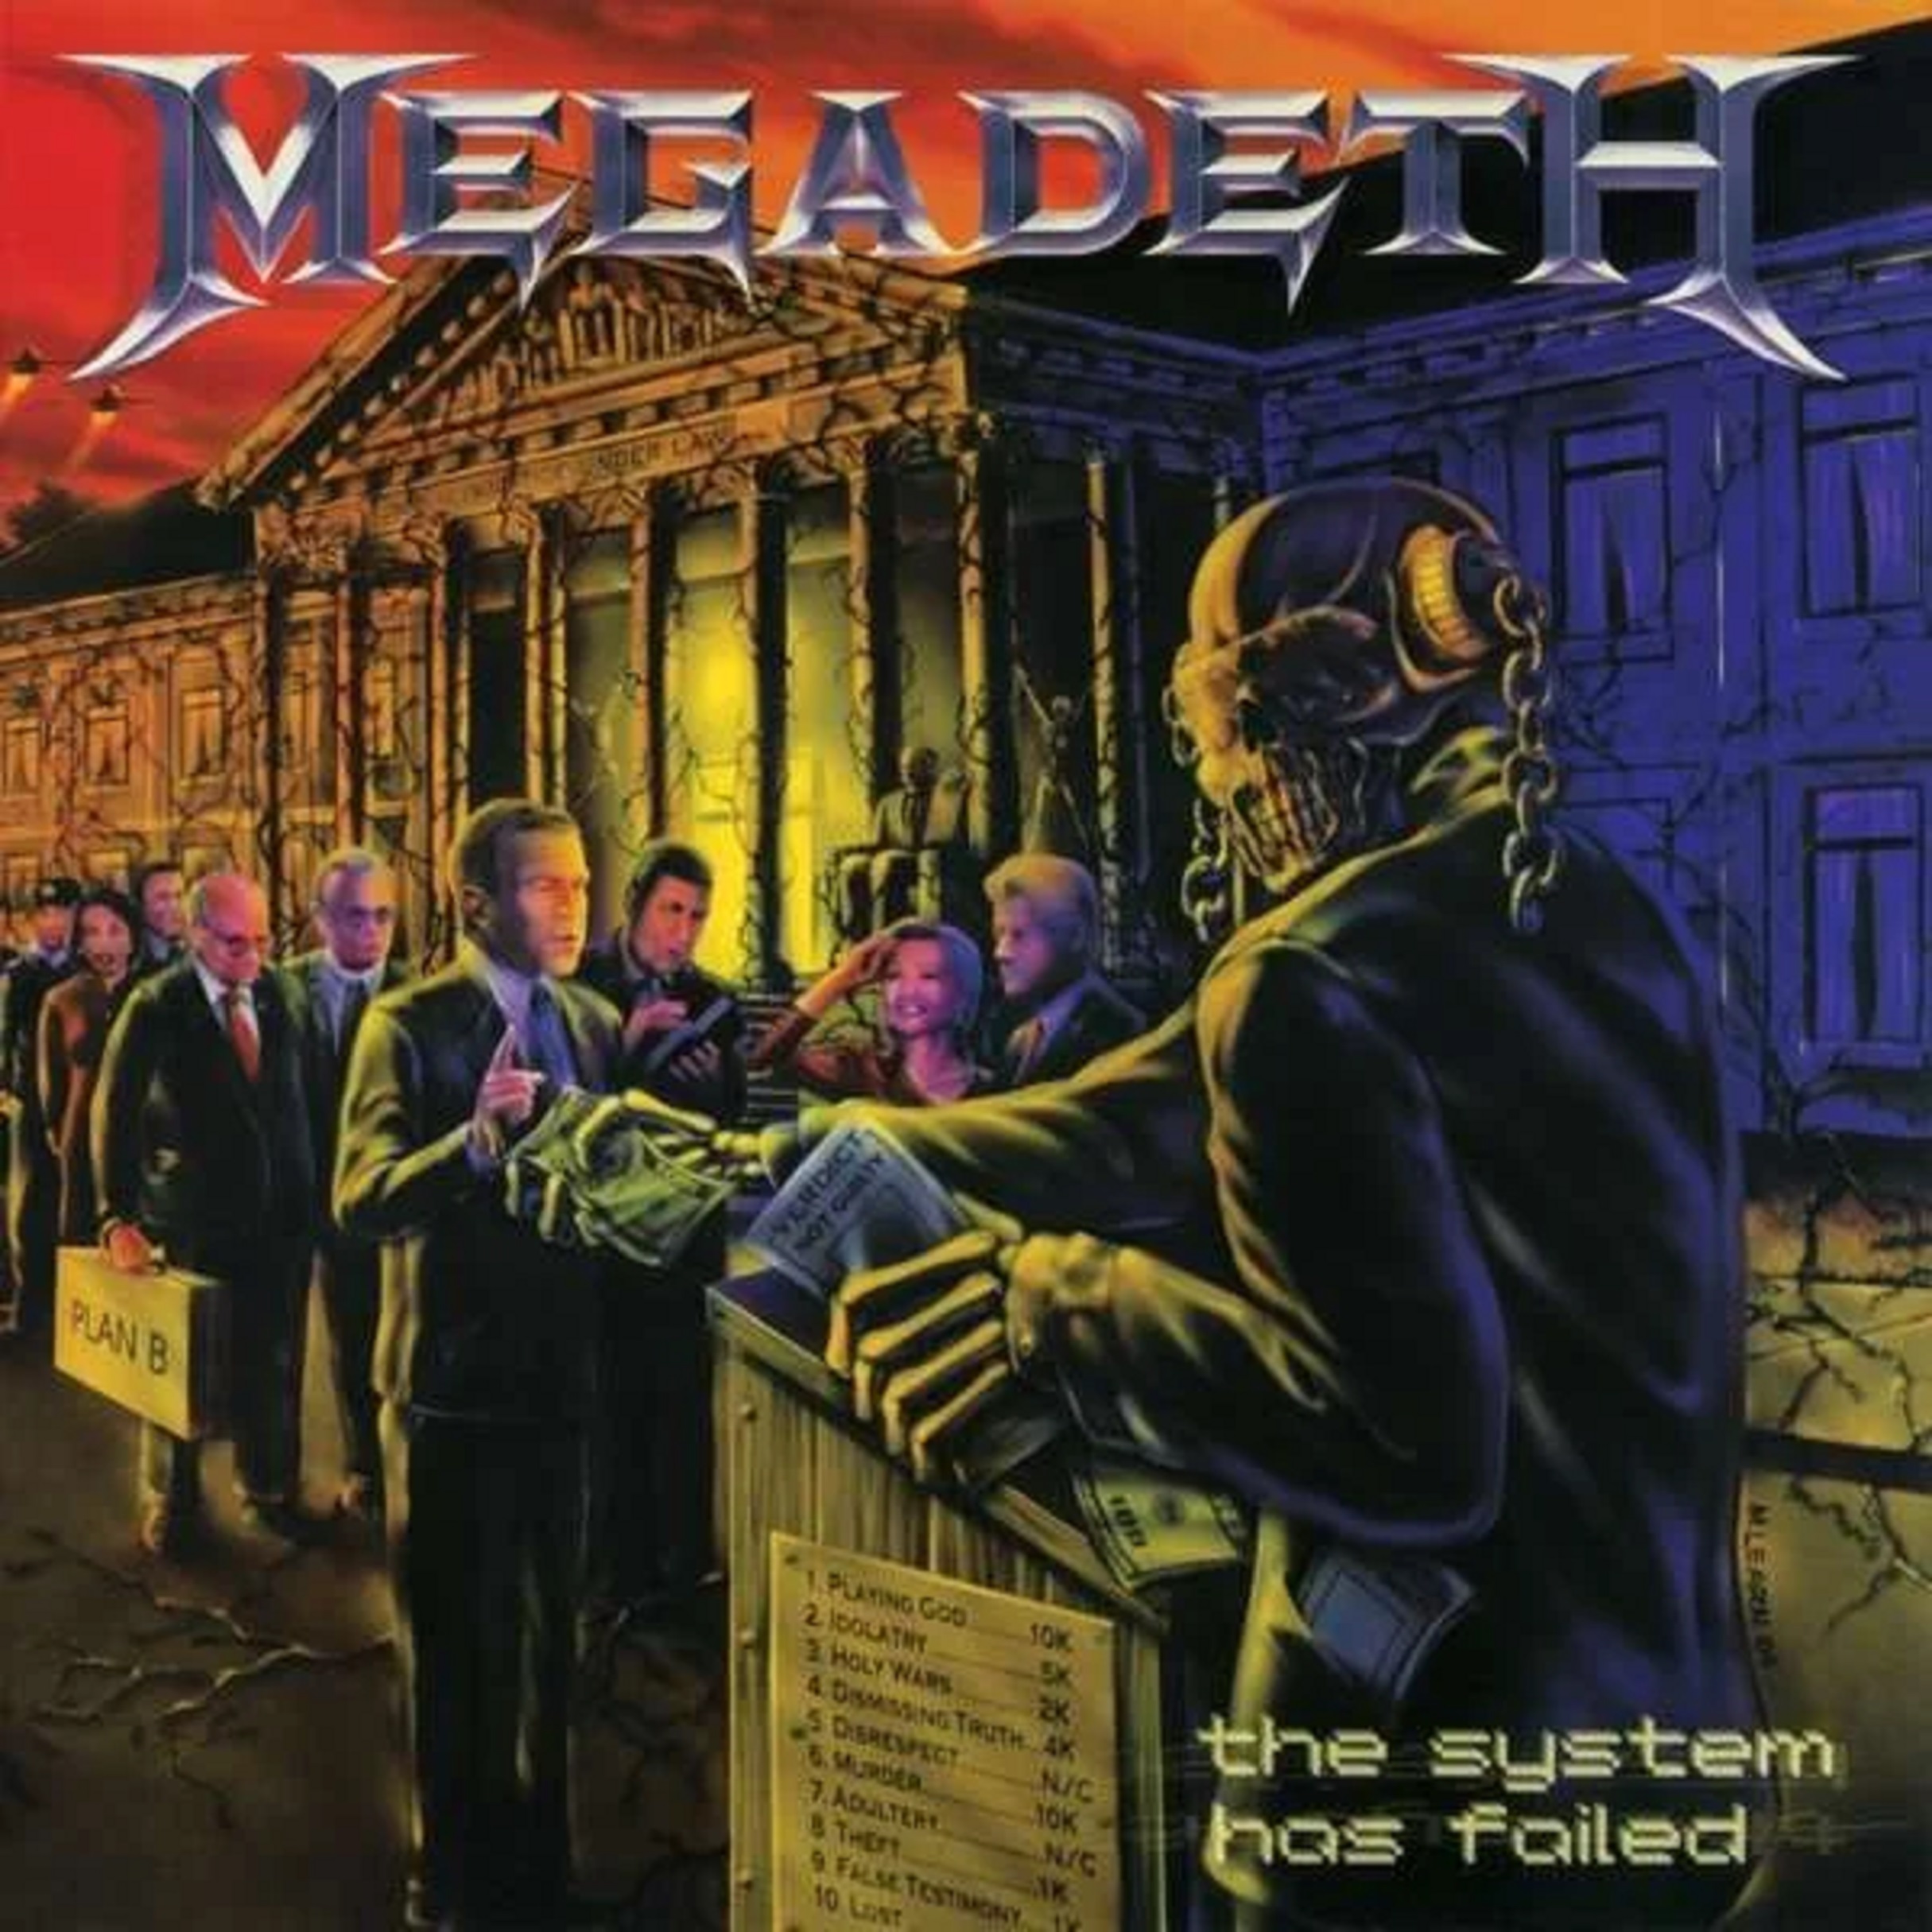 The System has failed | Megadeth